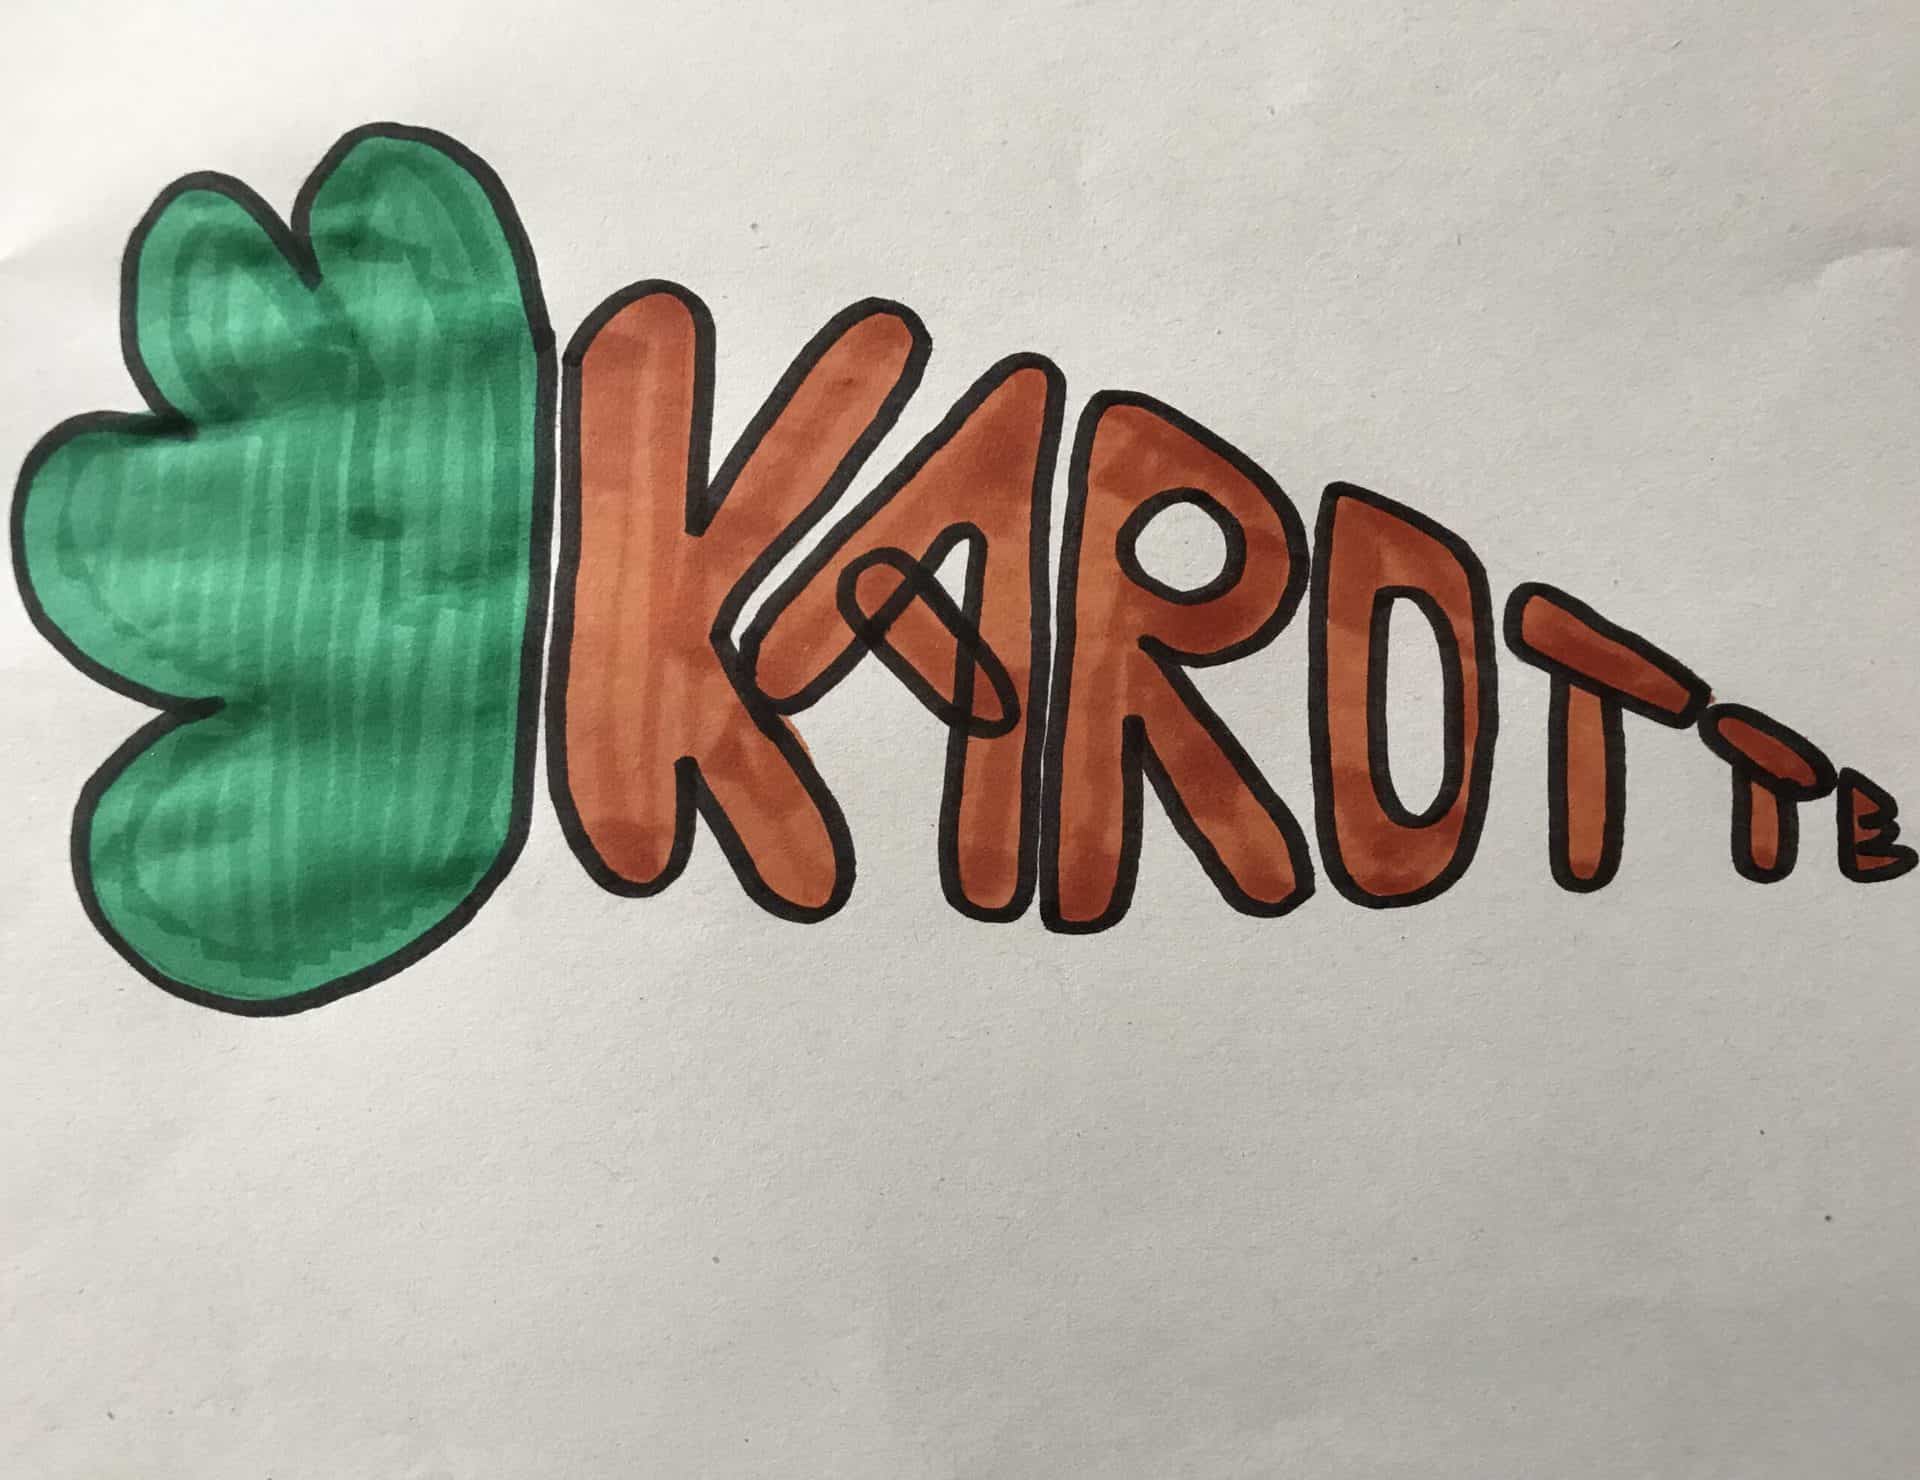 Karotte geschrieben in Karottenform. Die Karotte ist orange angemalt und das Karottengrün ist grün angemalt.